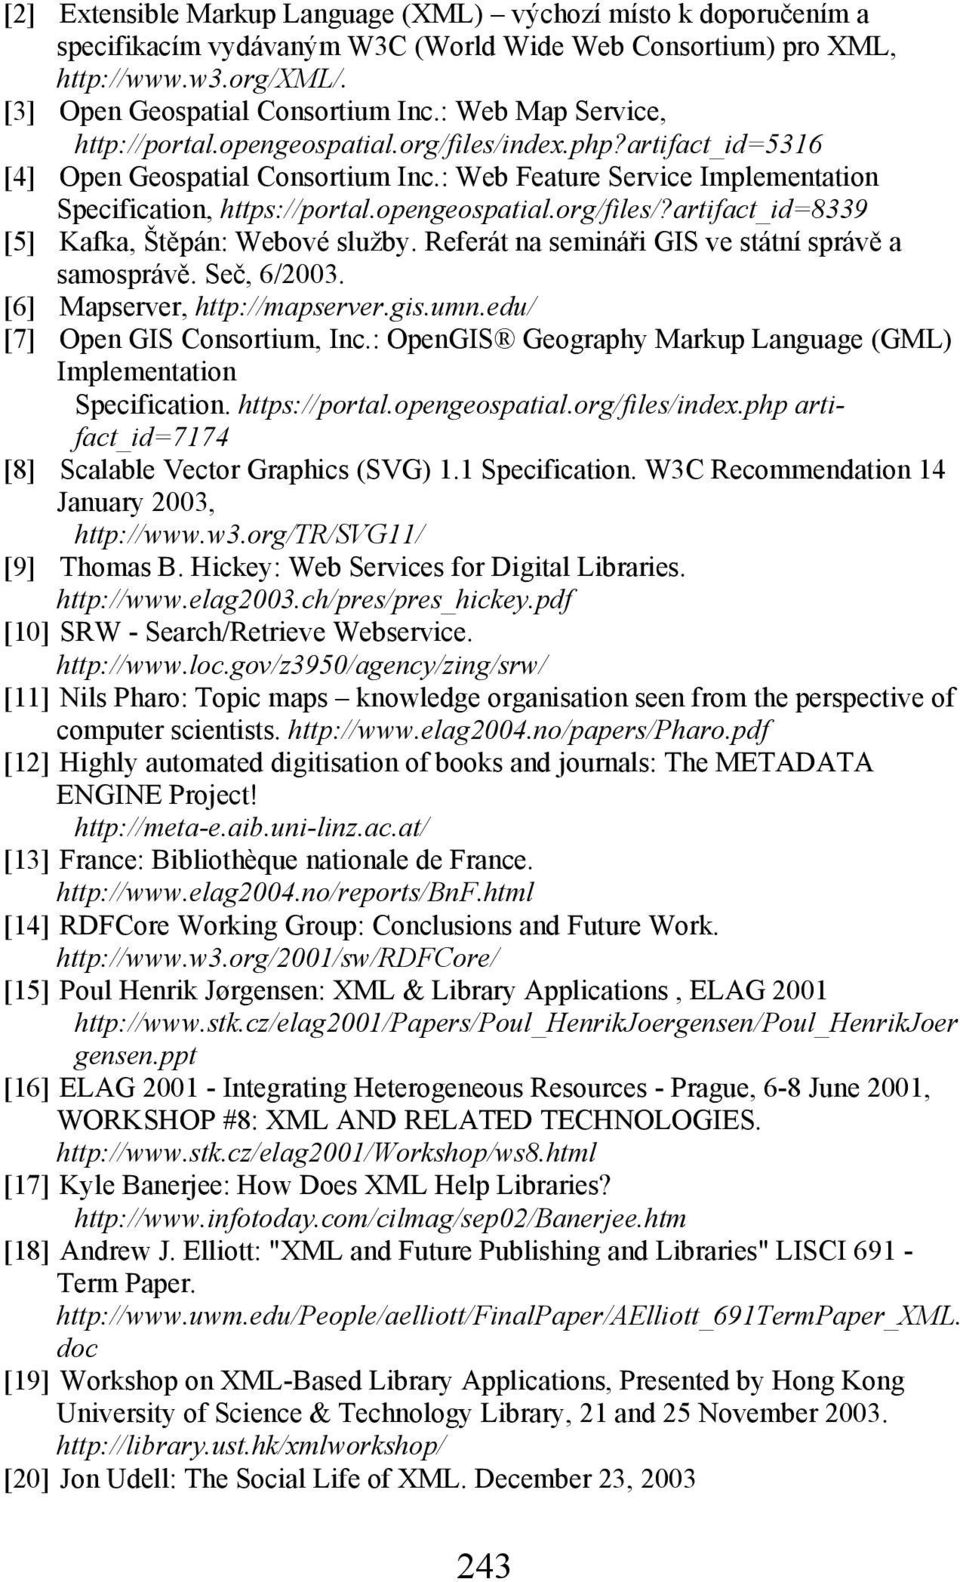 opengeospatial.org/files/?artifact_id=8339 [5] Kafka, Štěpán: Webové služby. Referát na semináři GIS ve státní správě a samosprávě. Seč, 6/2003. [6] Mapserver, http://mapserver.gis.umn.